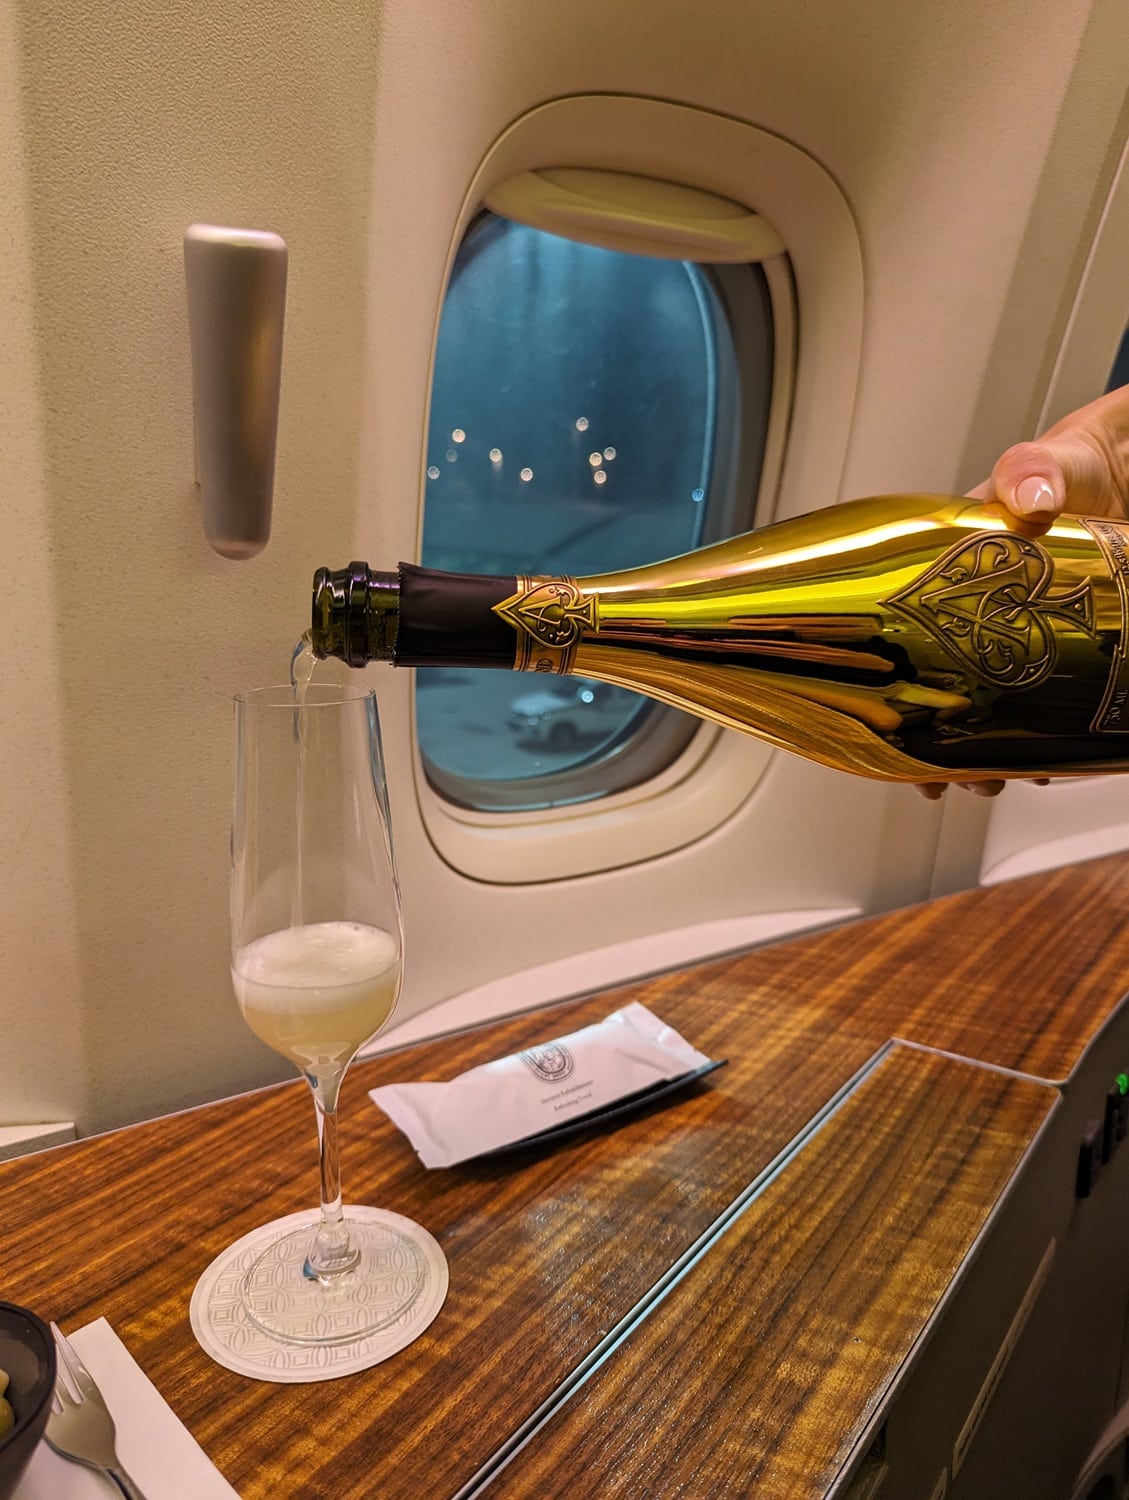 qatar airways first class 777-300er armand de brignac champagne pour